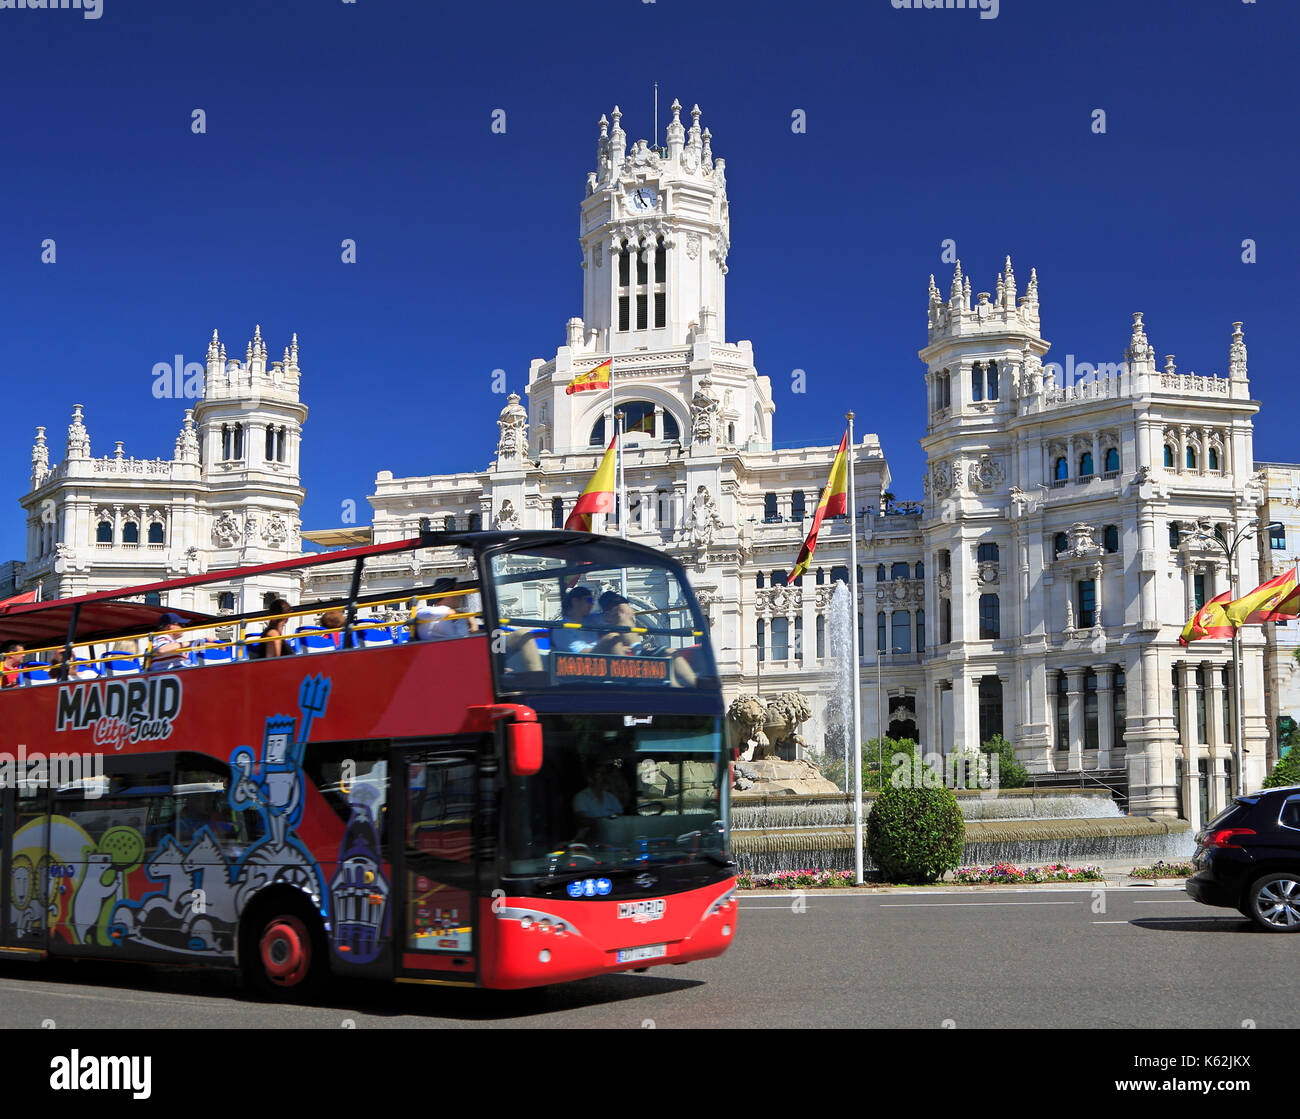 Madrid, España - Junio 26, 2017: madrid city tour bus pasando por delante del palacio de cibeles con disfrutando del paseo turístico. Foto de stock